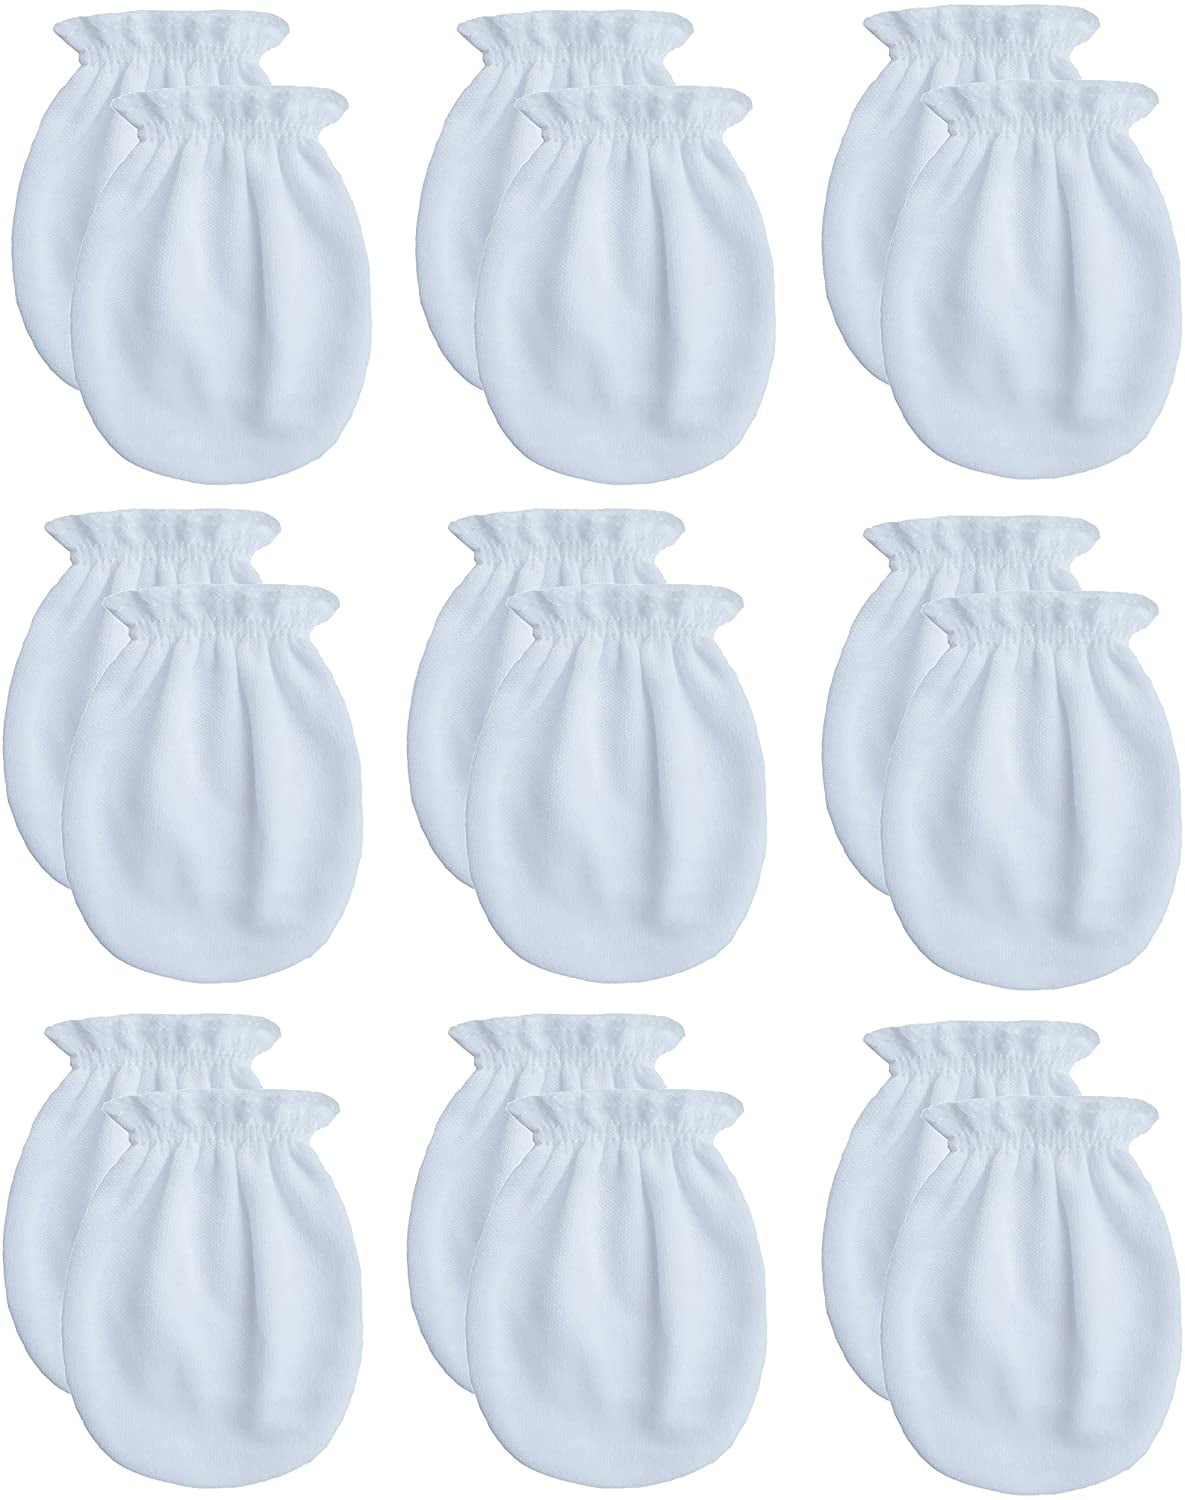 Unisex Baby Cotton Scratch Mittens For Newborn Baby Boys Girls Mittens Accessory 0-6 Months